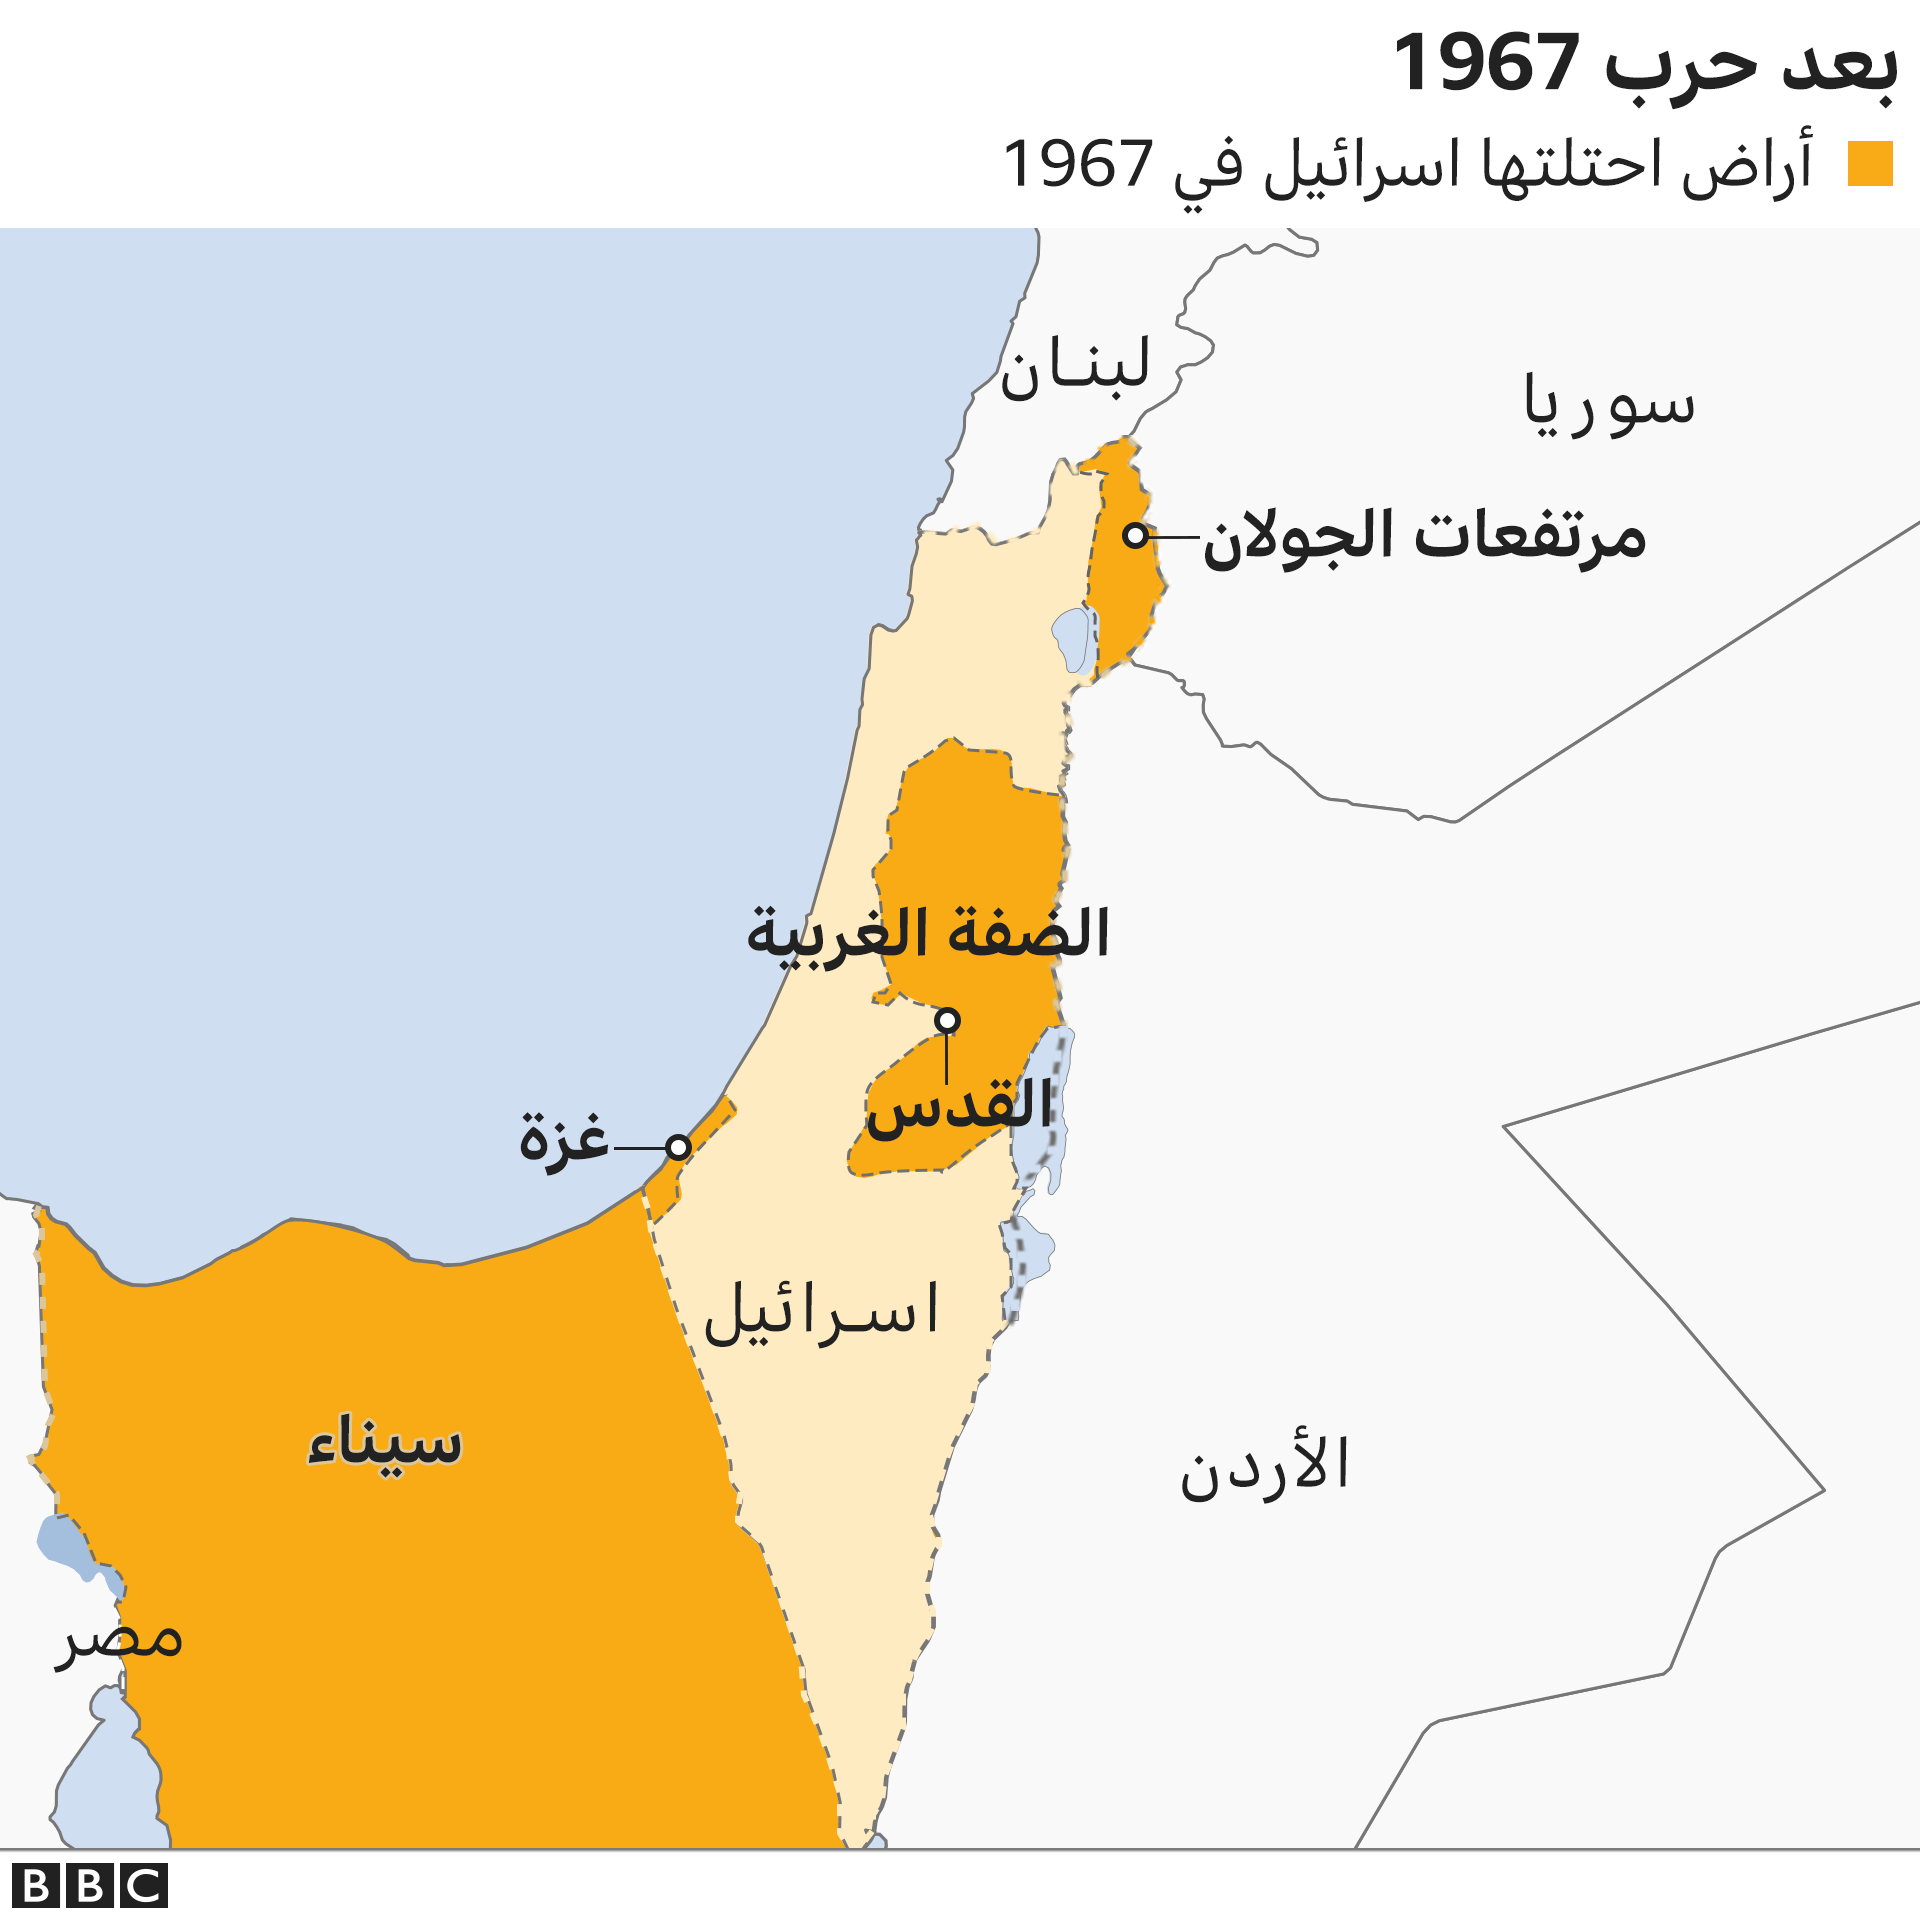 تسلسل للتاريخ الفلسطيني منذ الحرب العالمية الأولى _114395346_04_after_the_1967_war_640-nc-3x-nc